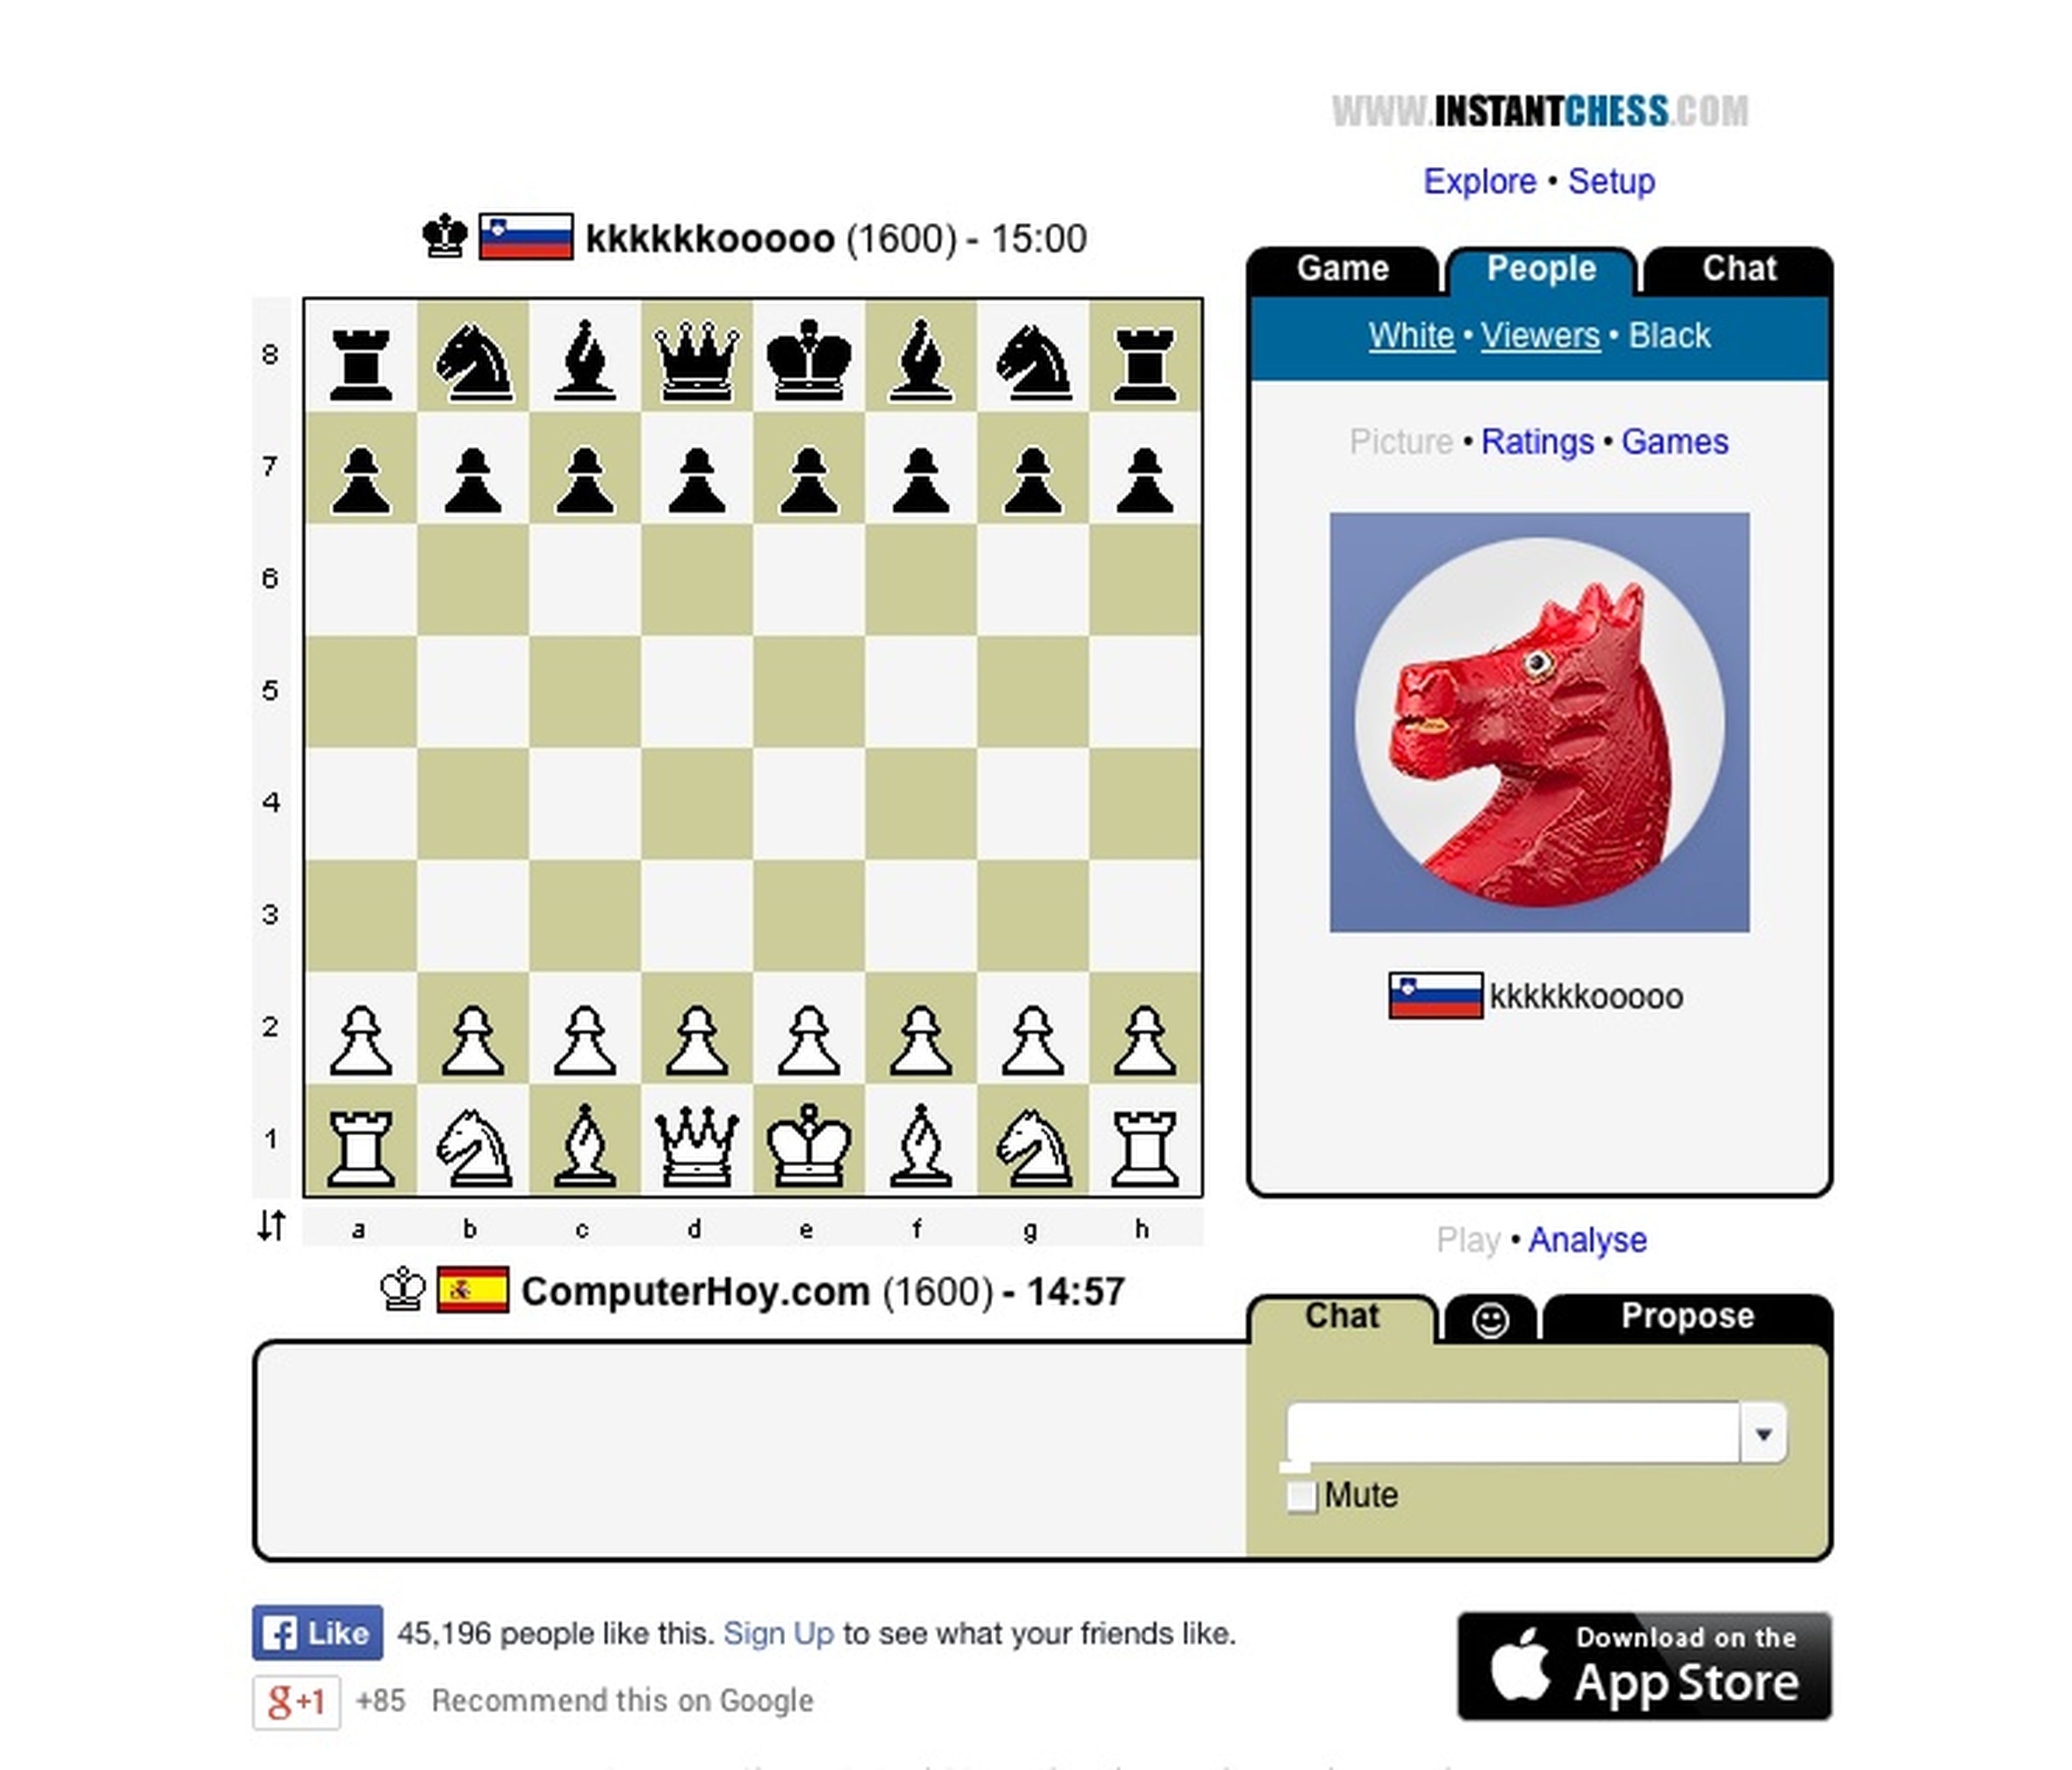 En esta web puedes jugar partidas de ajedrez con amigos